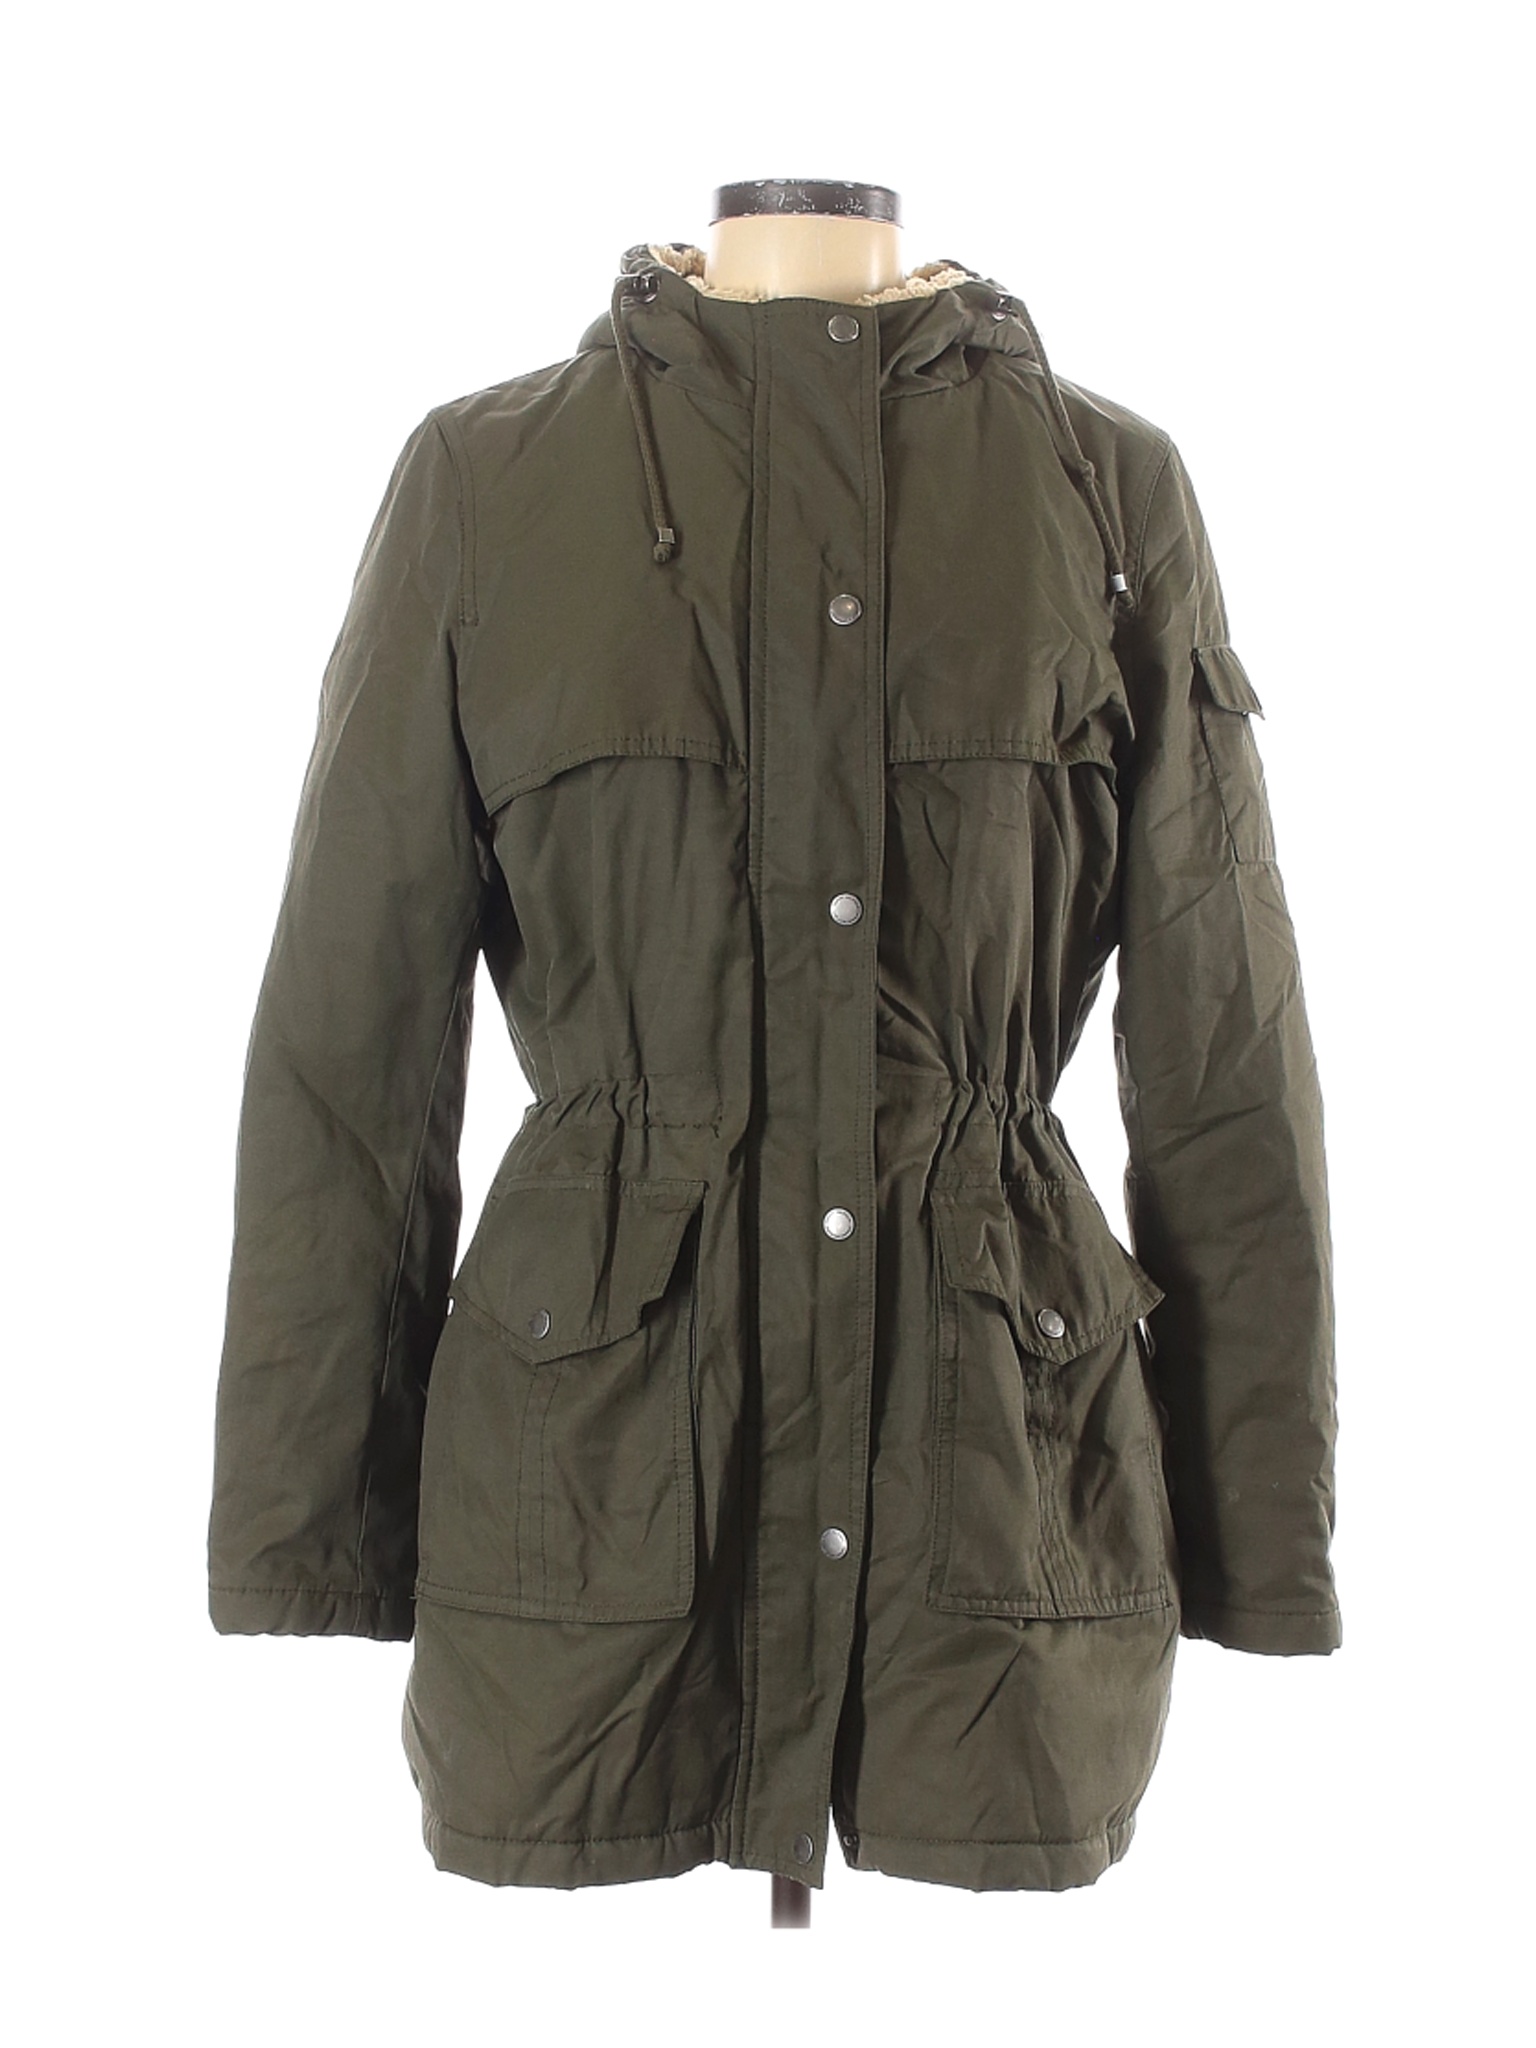 Tommy Hilfiger Women Green Coat M | eBay